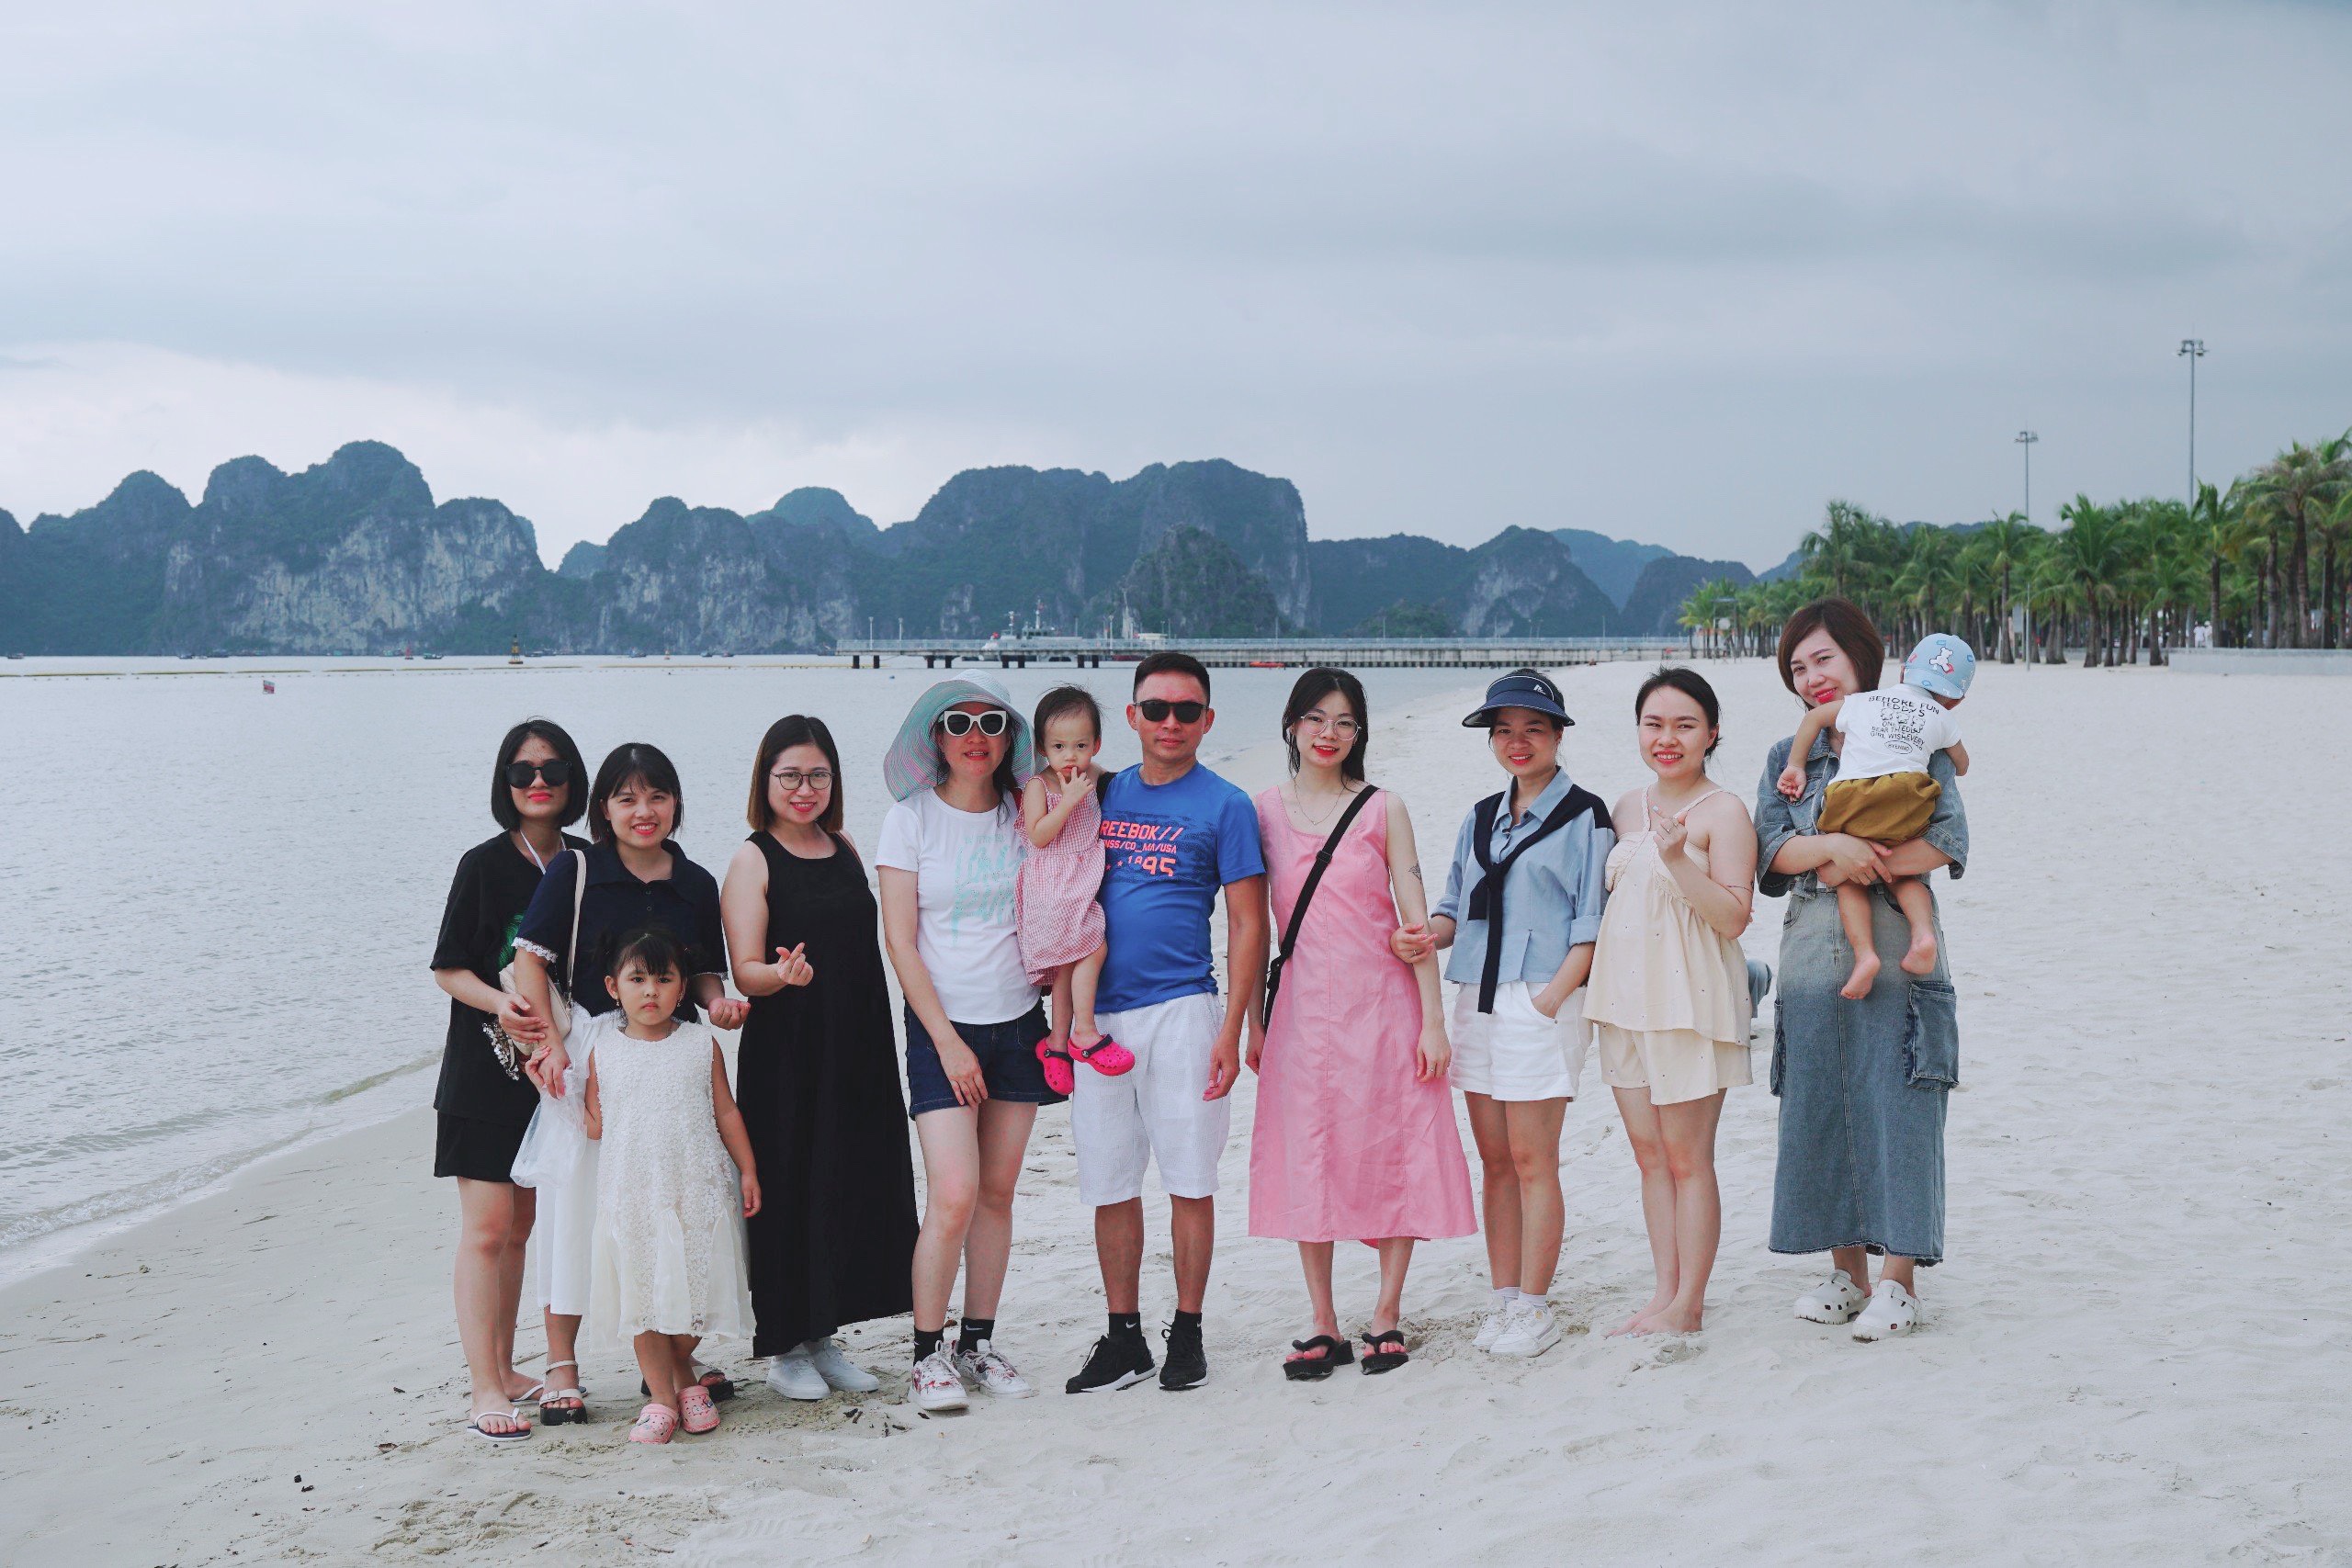 Du lịch Hạ Long hè năm 2023 – Chuyến đi gắn kết tinh thần tập thể Khang Linh